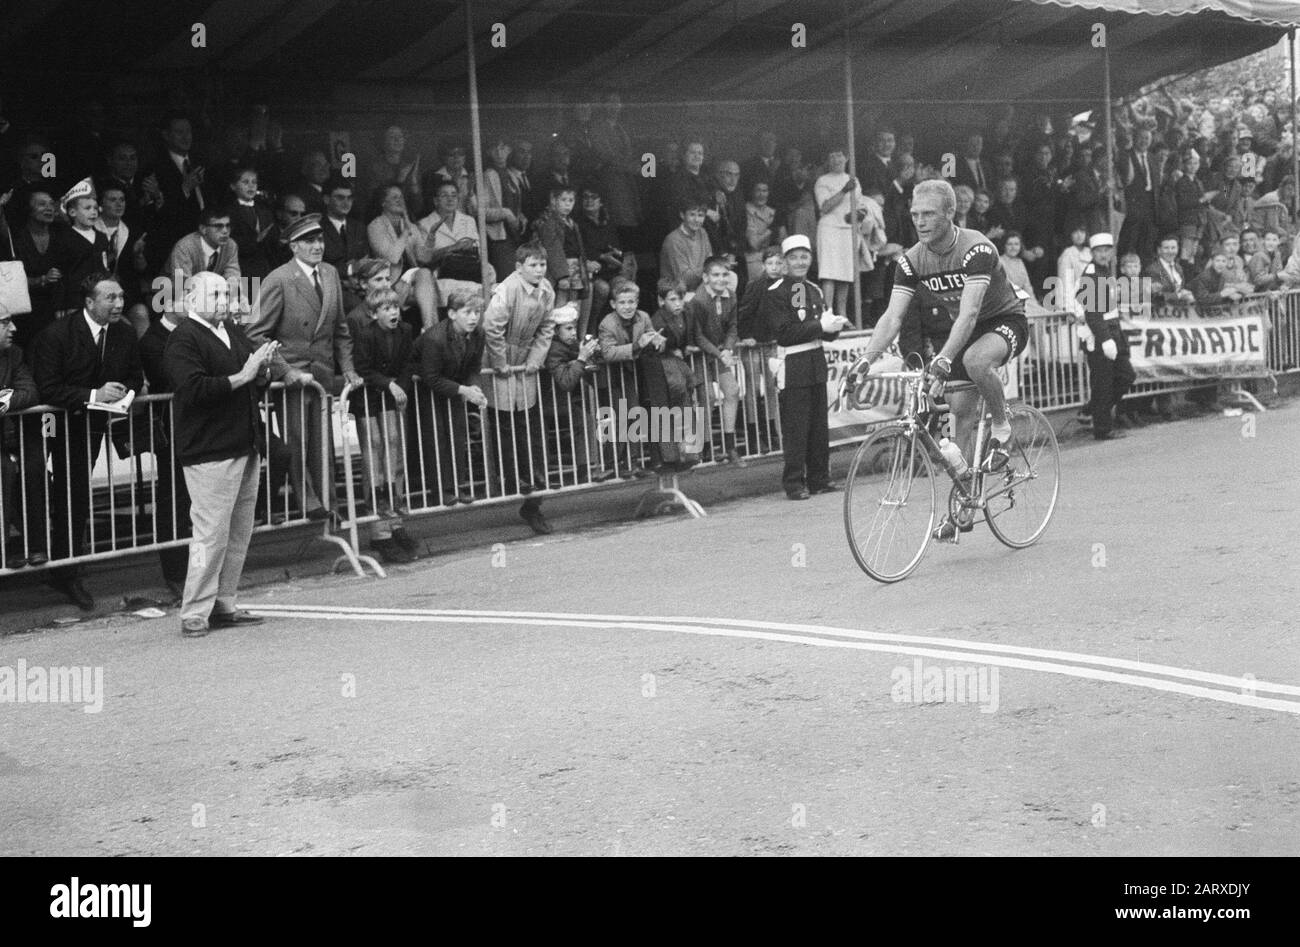 Tour de France, start cyclists Date: June 27, 1966 Keywords: cyclists Institution name: Tour de France Stock Photo